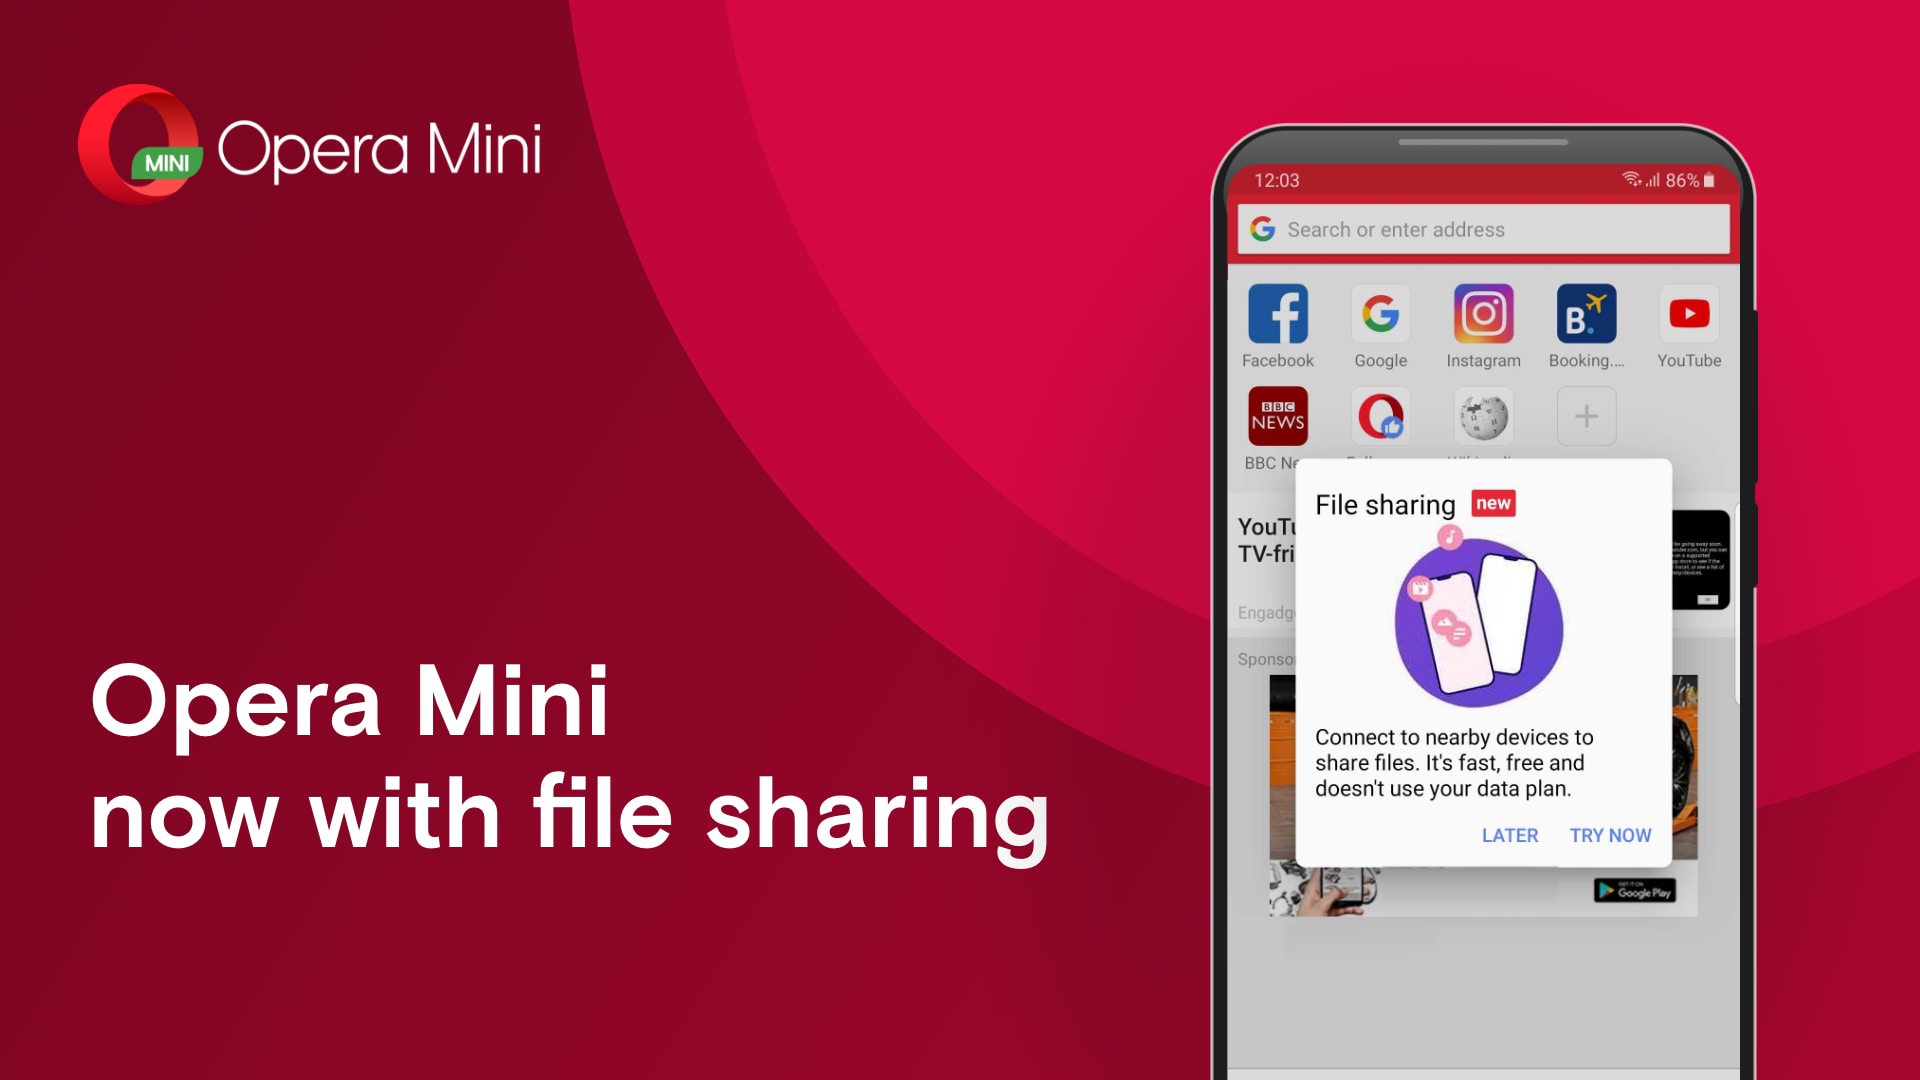 Opera Mini si aggiorna con la possibilità di condividere foto, video e file audio anche offline (video)